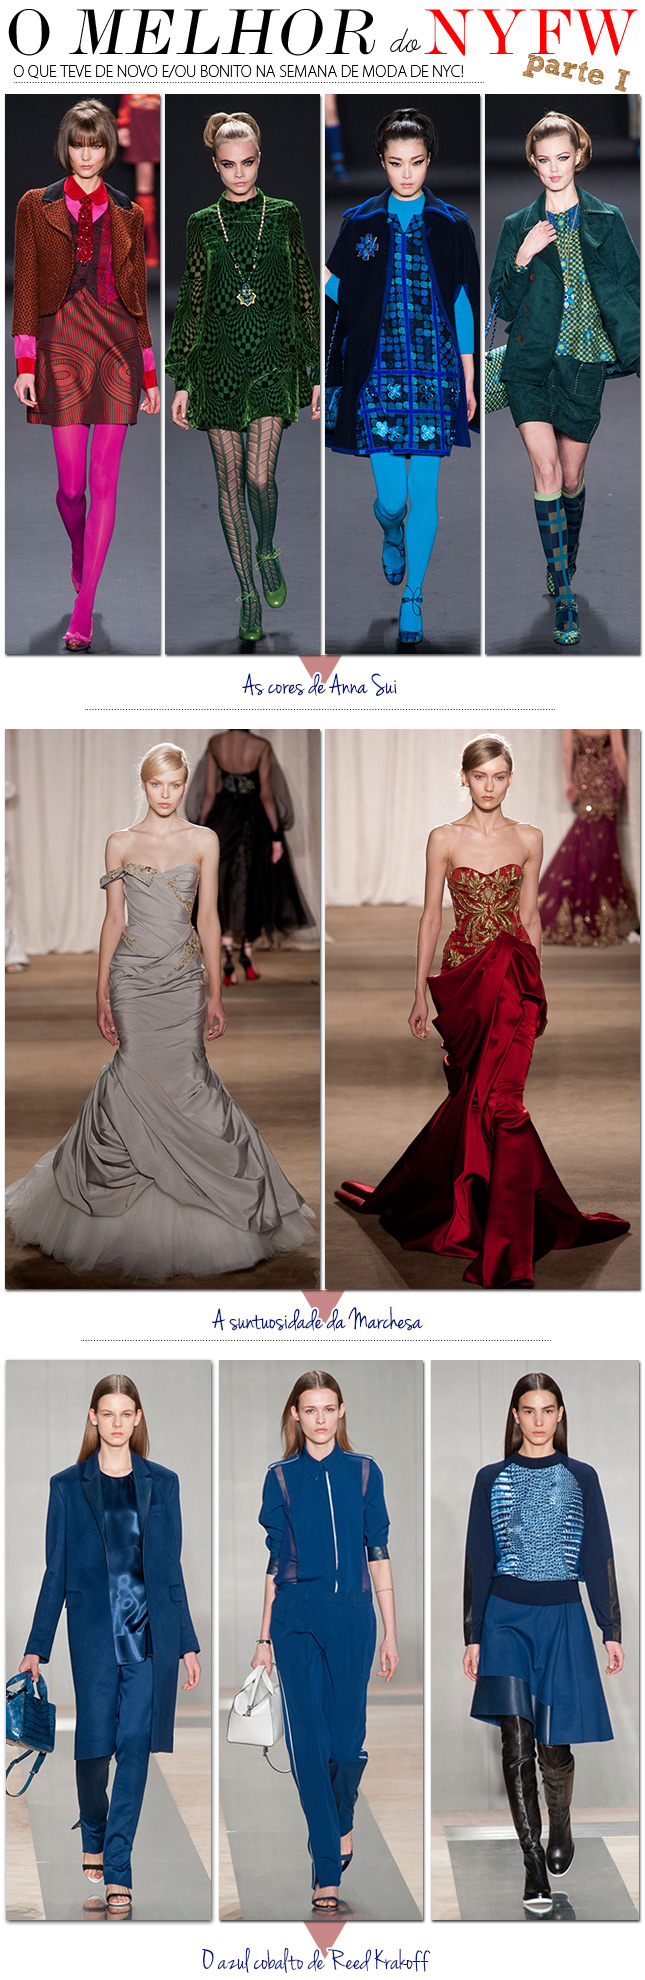 nyfw new york fashion week desfiles moda blog de moda tendencia inverno 2103 2014